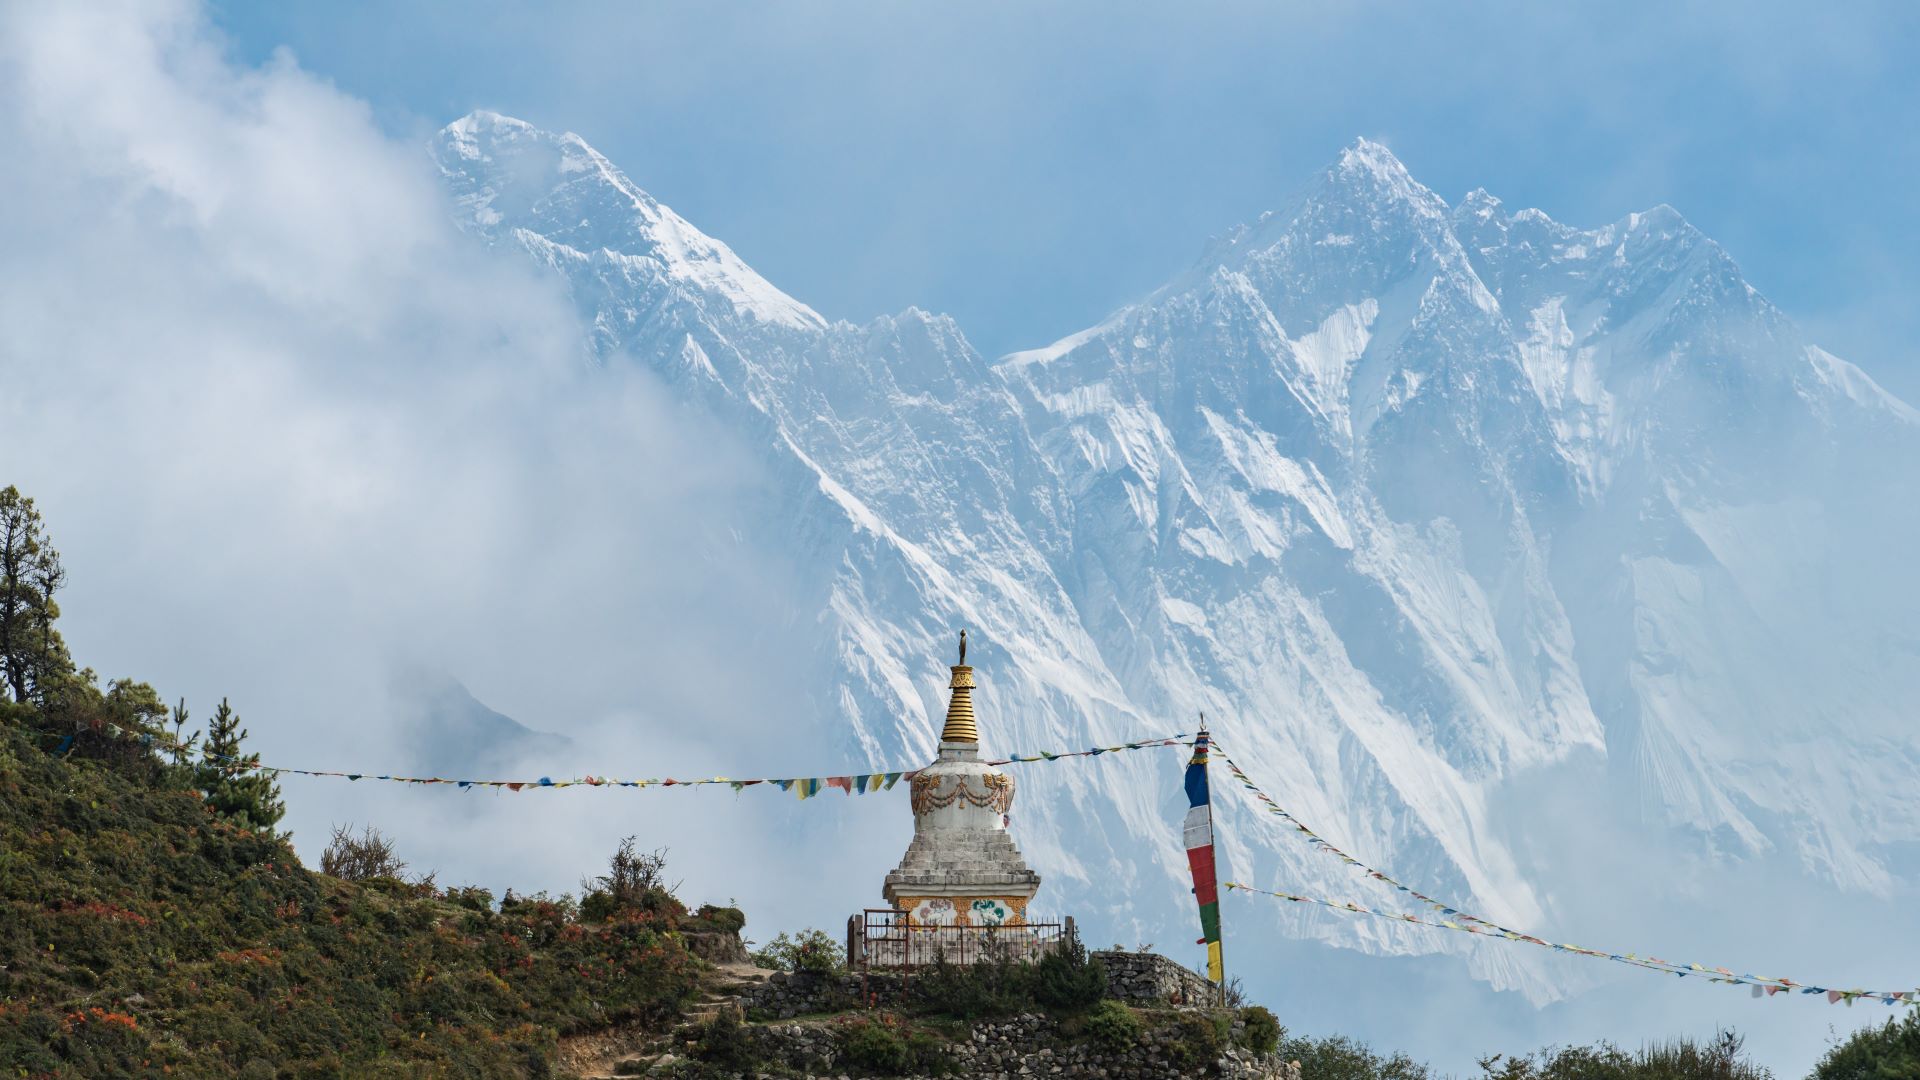 Estatua de Tengzing Norgay con el Everest y el Lhotse al fondo